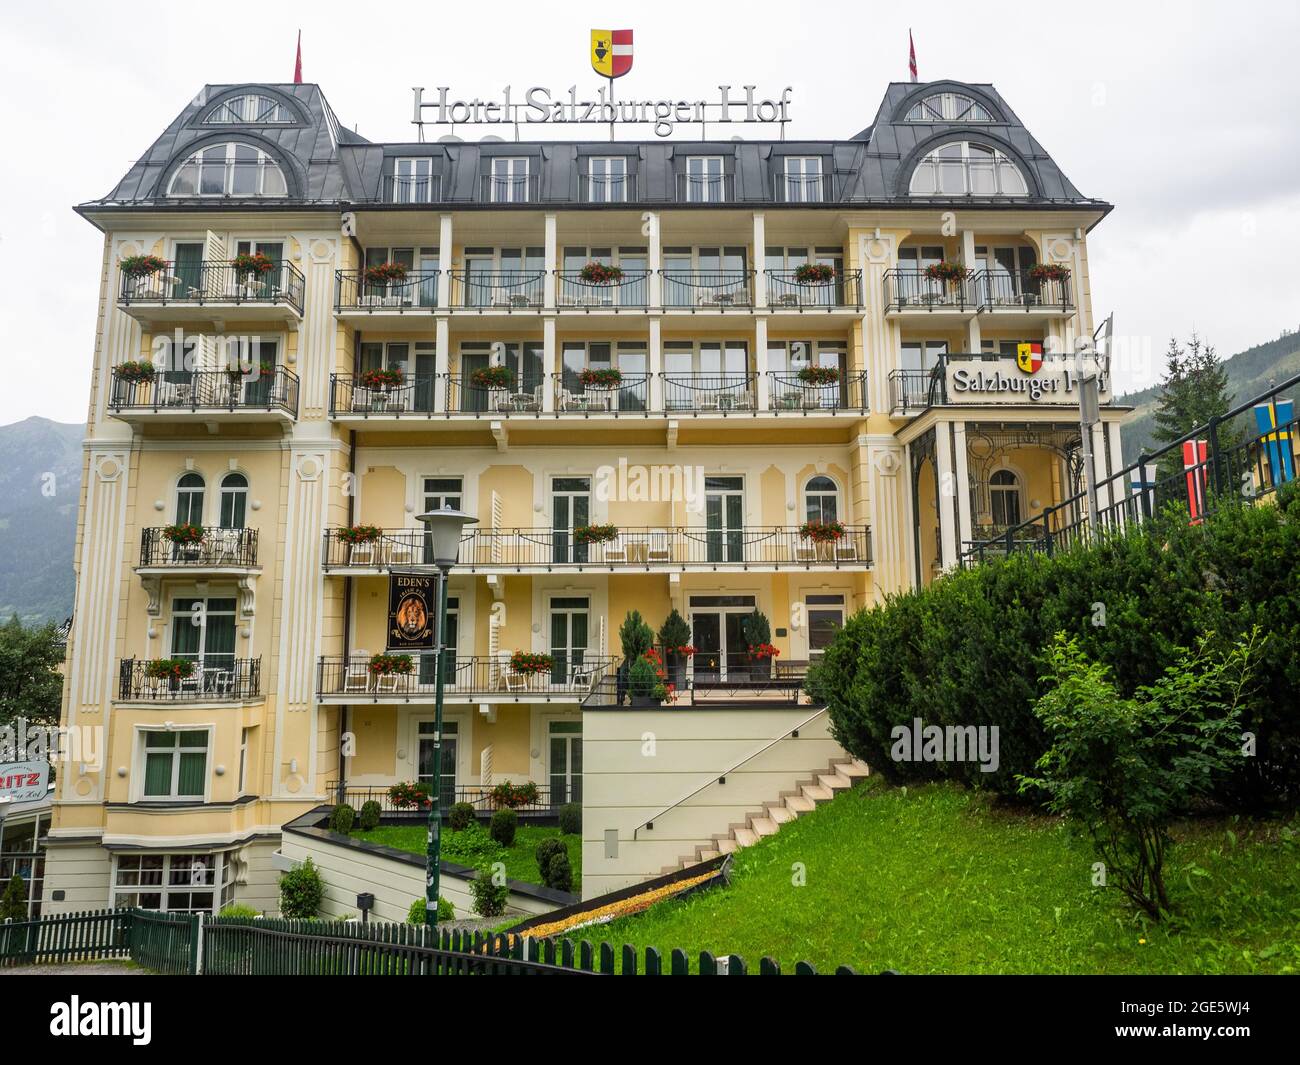 Hotel Salzburger Hof, Bad Gastein, Salzburger Land, Austria Foto Stock